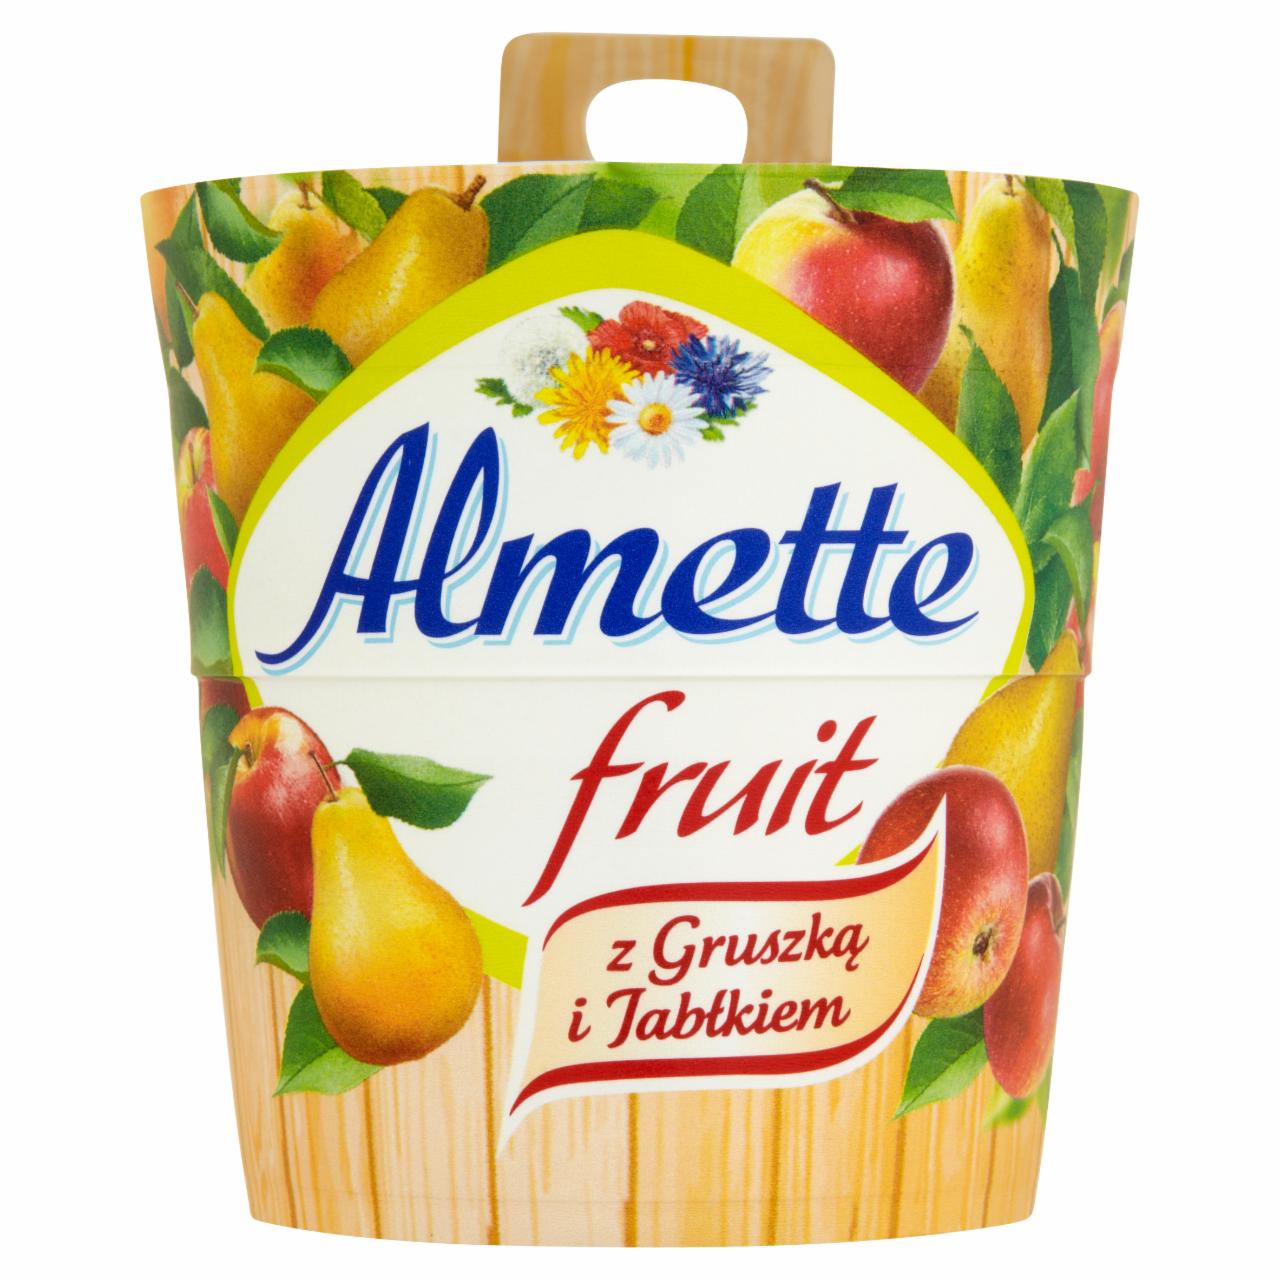 Zdjęcia - Almette Fruit z gruszką i jabłkiem Puszysty serek twarogowy 150 g